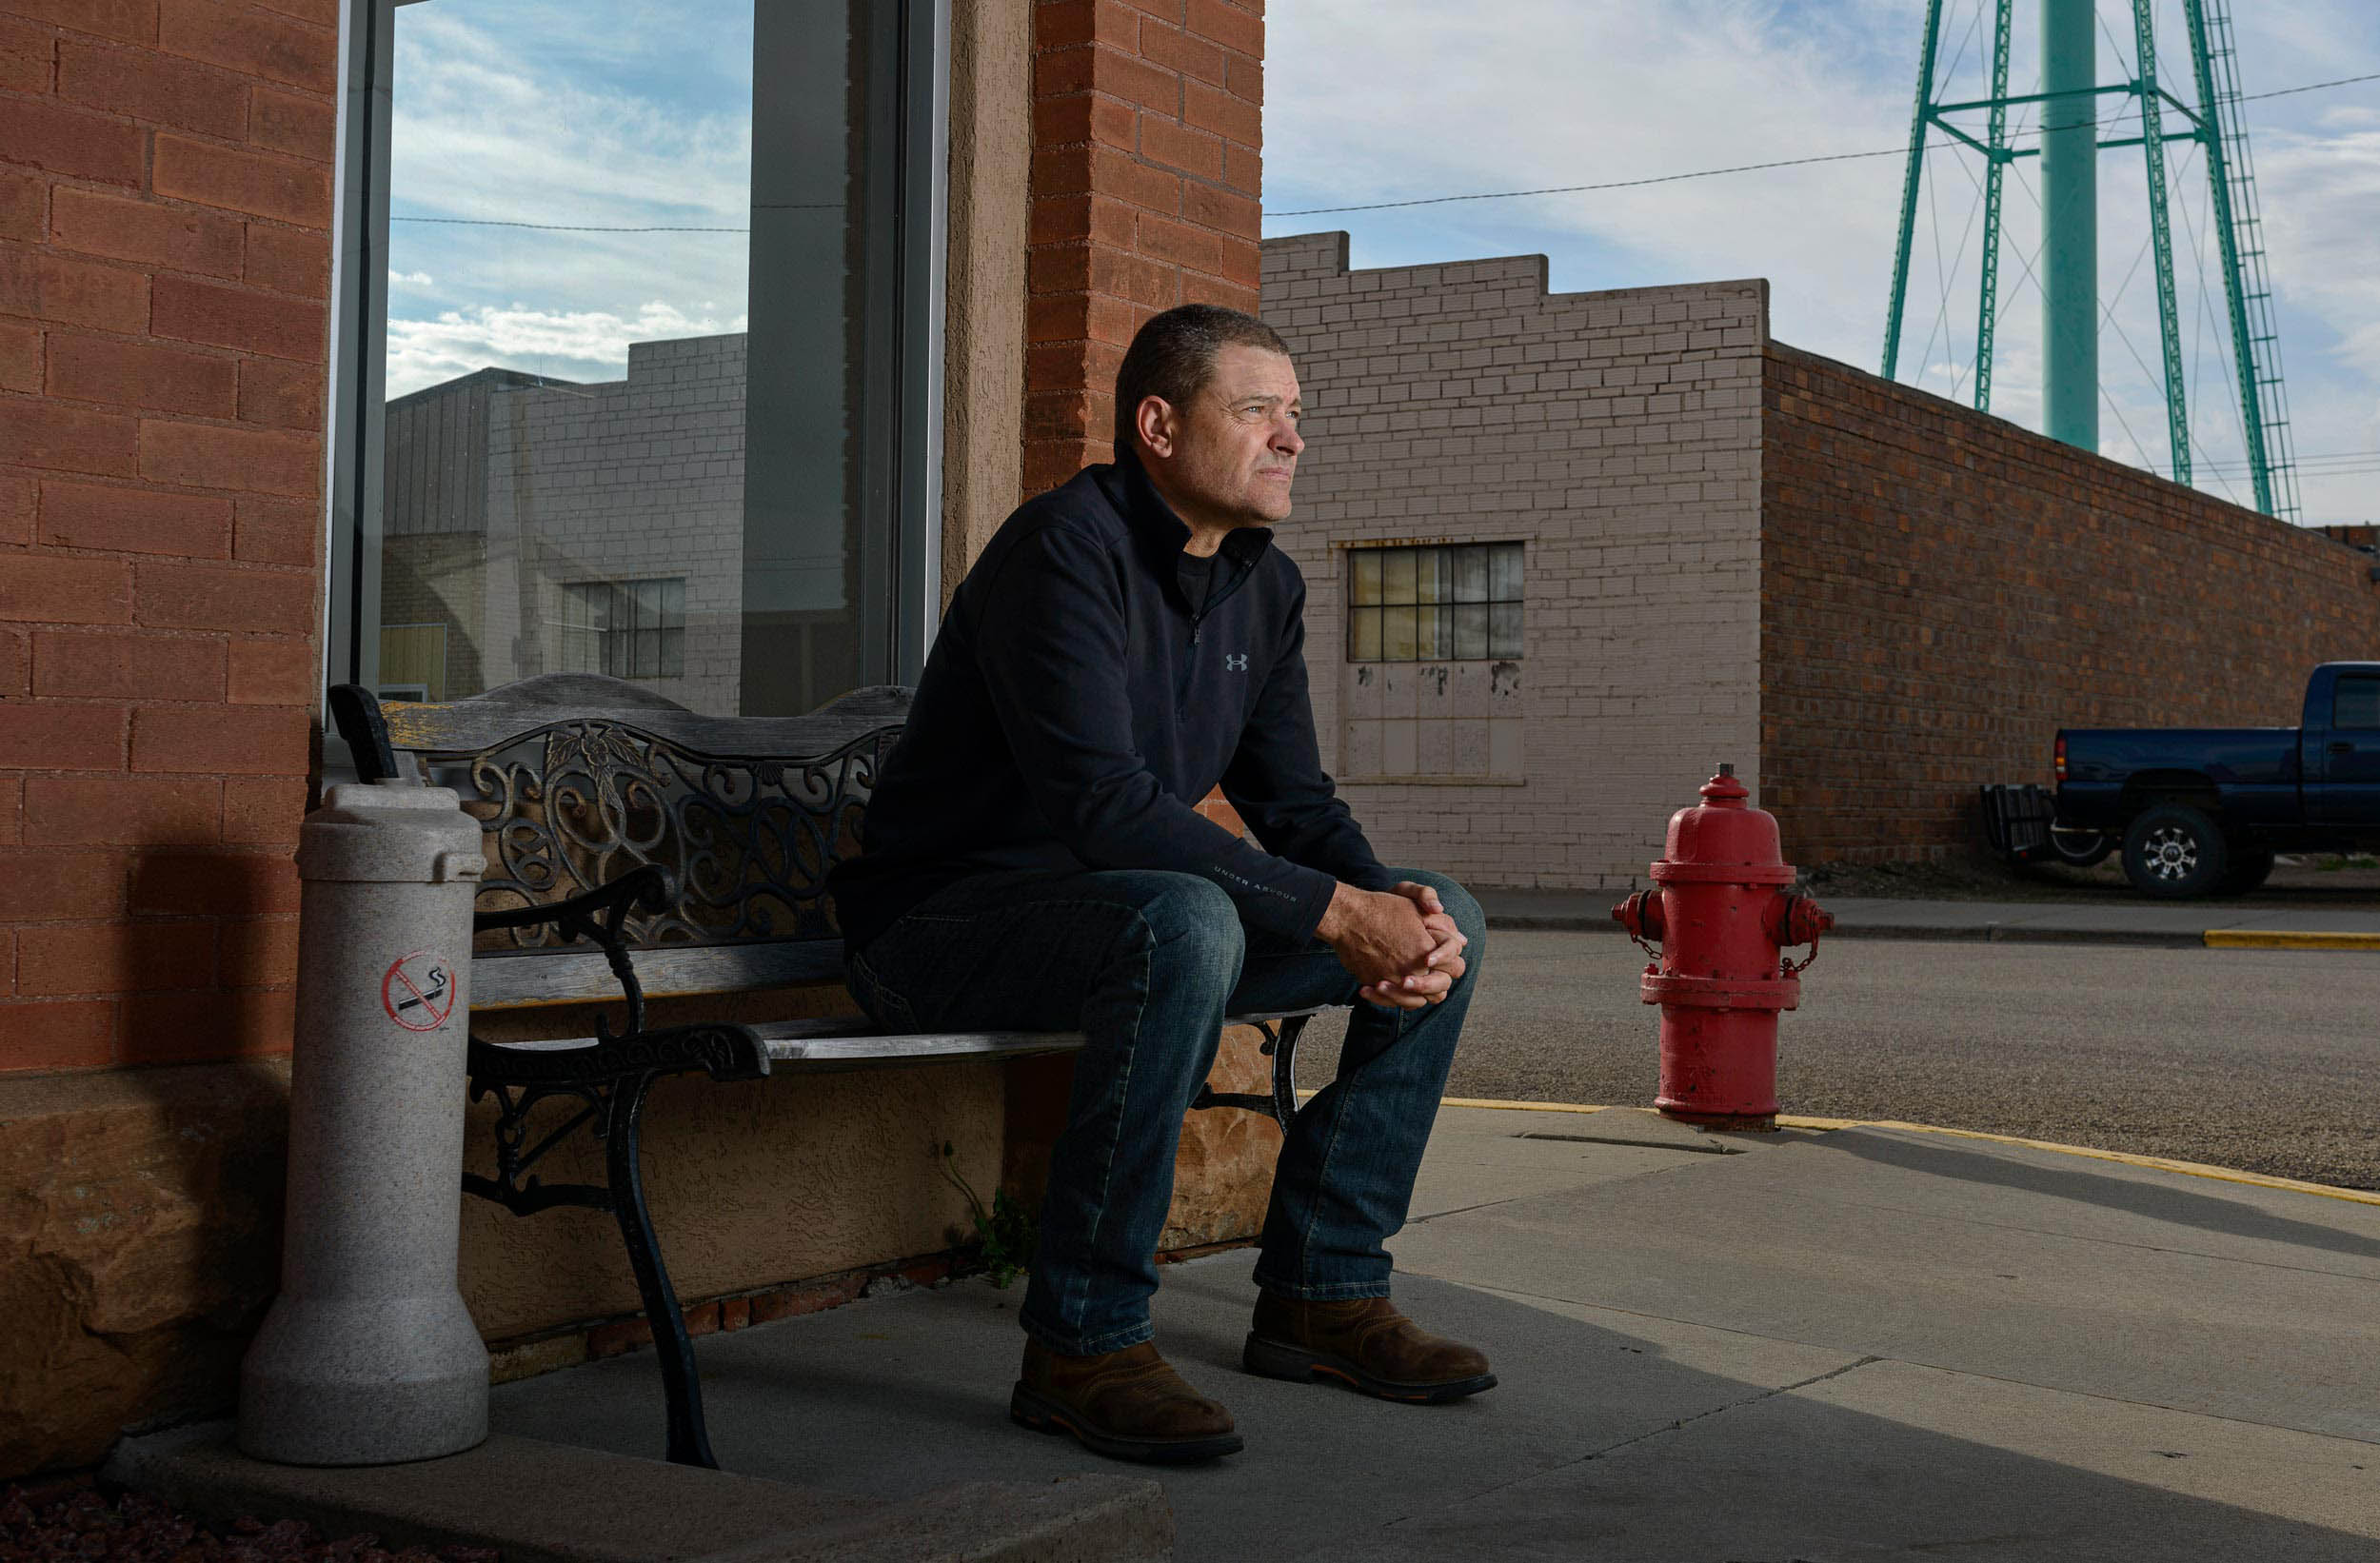  A portrait by Fargo, North Dakota photojournalist Dan Koeck.